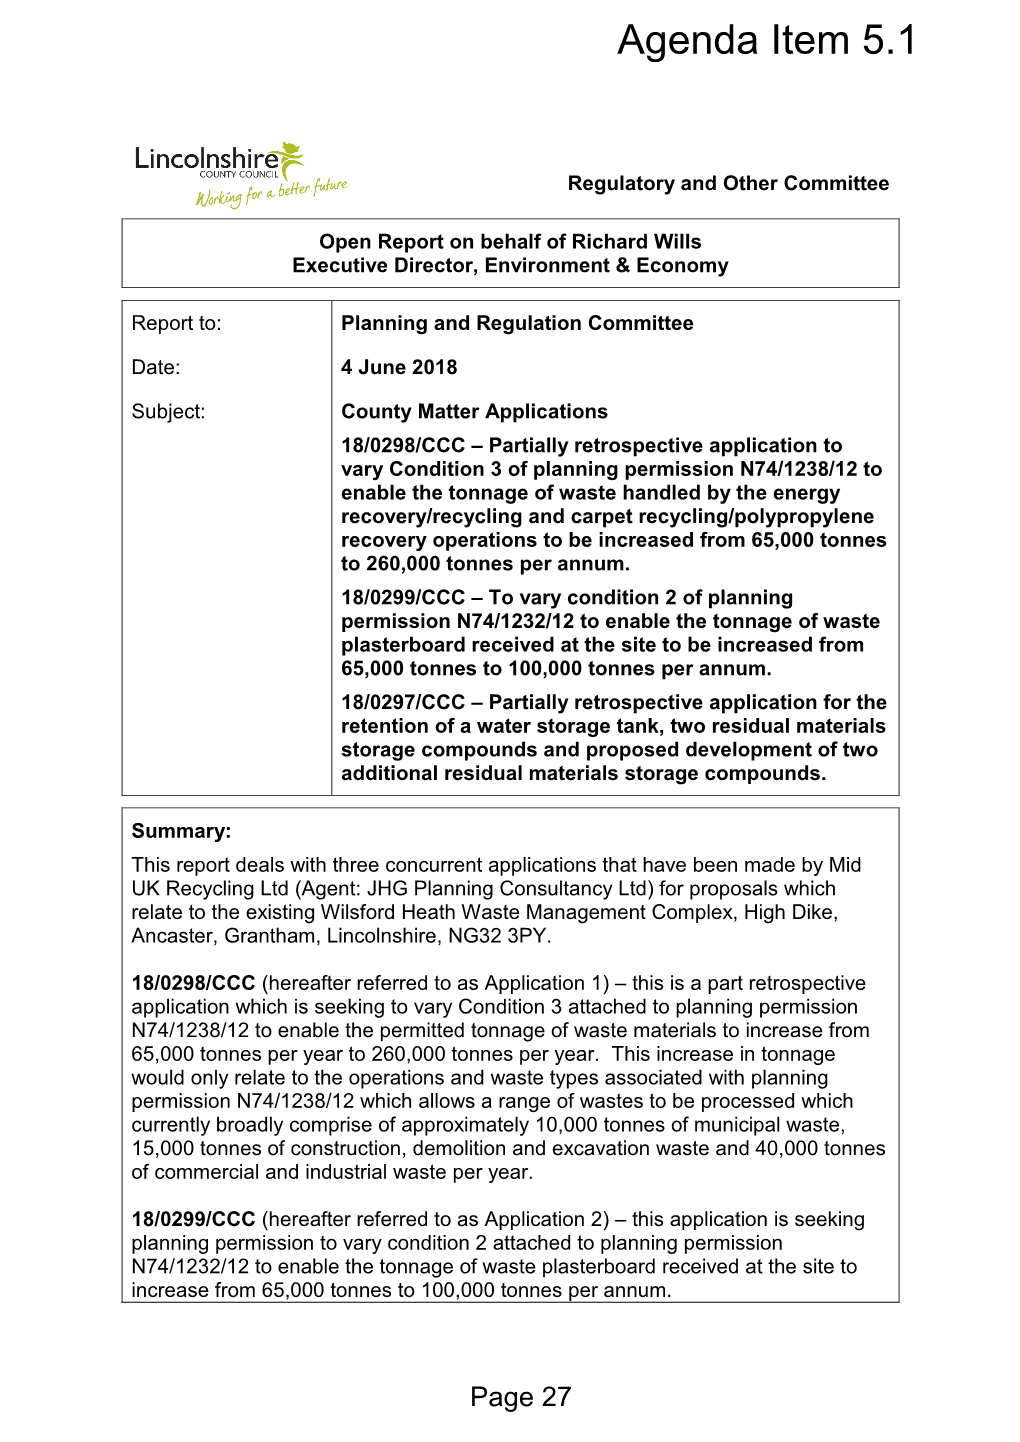 Wilsford Heath Planning Application Report, Item 17. PDF 1 MB